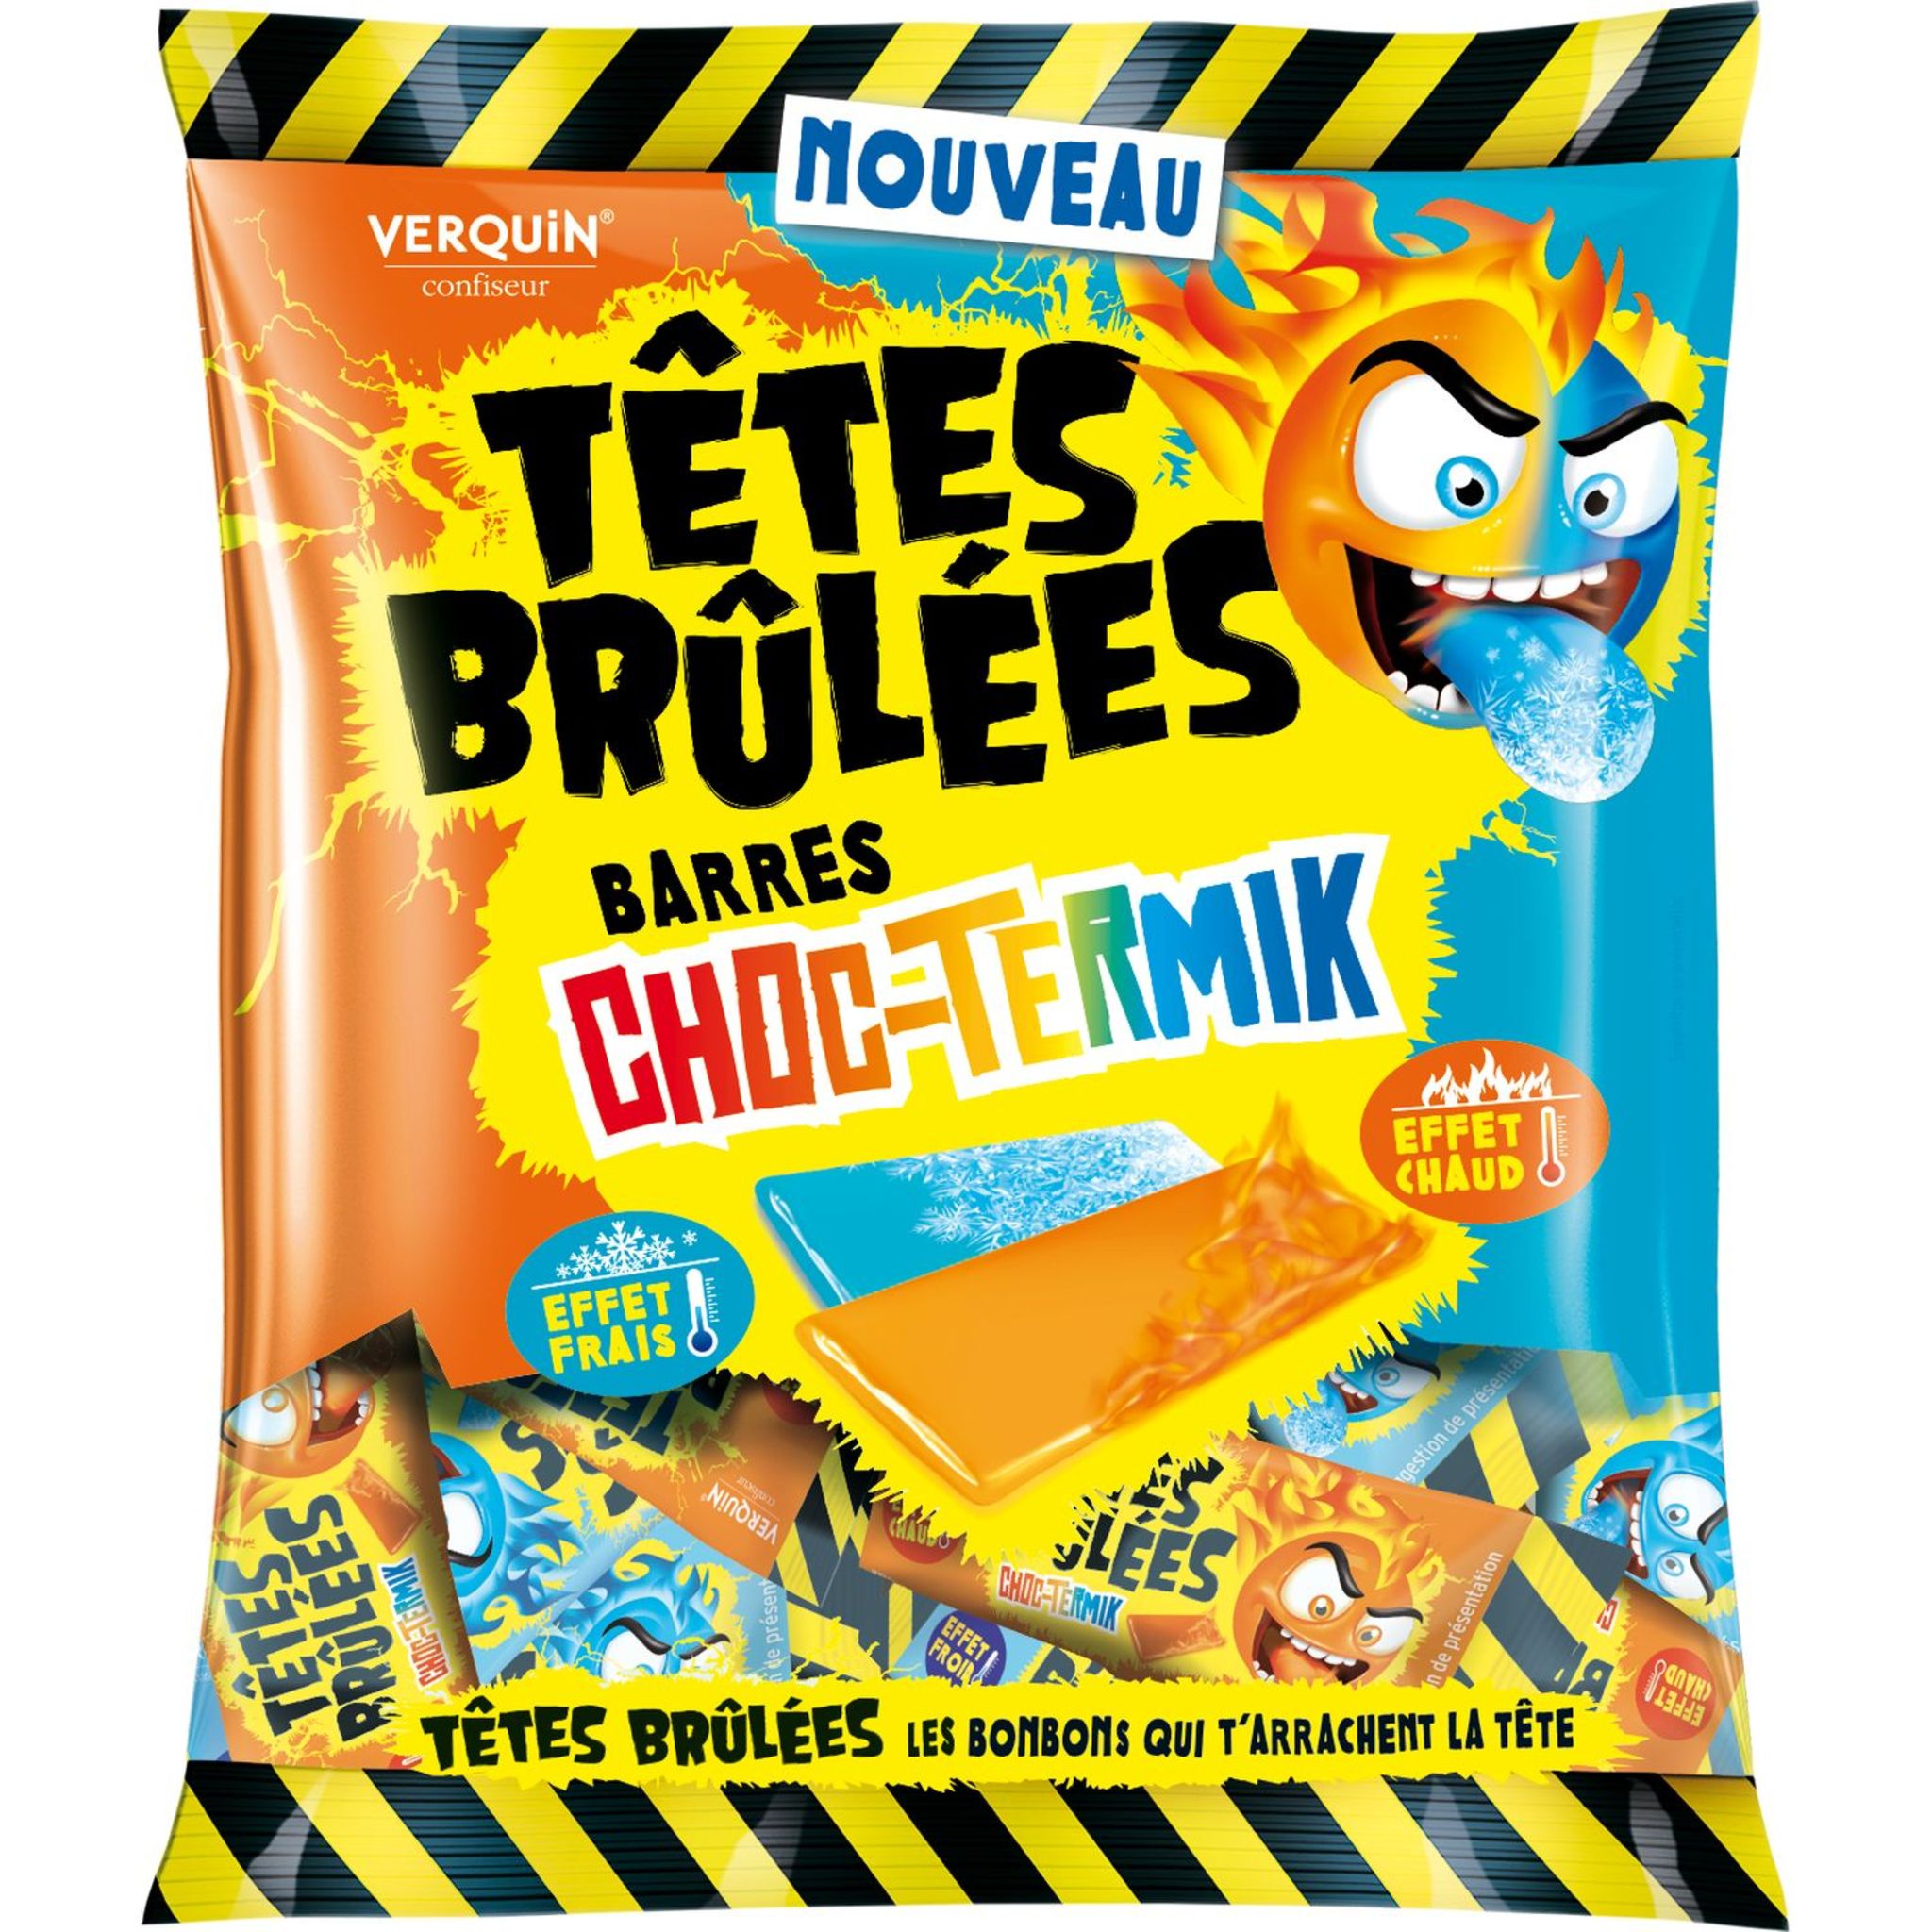 TETE BRULEES Bonbons barre choc-termik chaud/frais 200g pas cher 